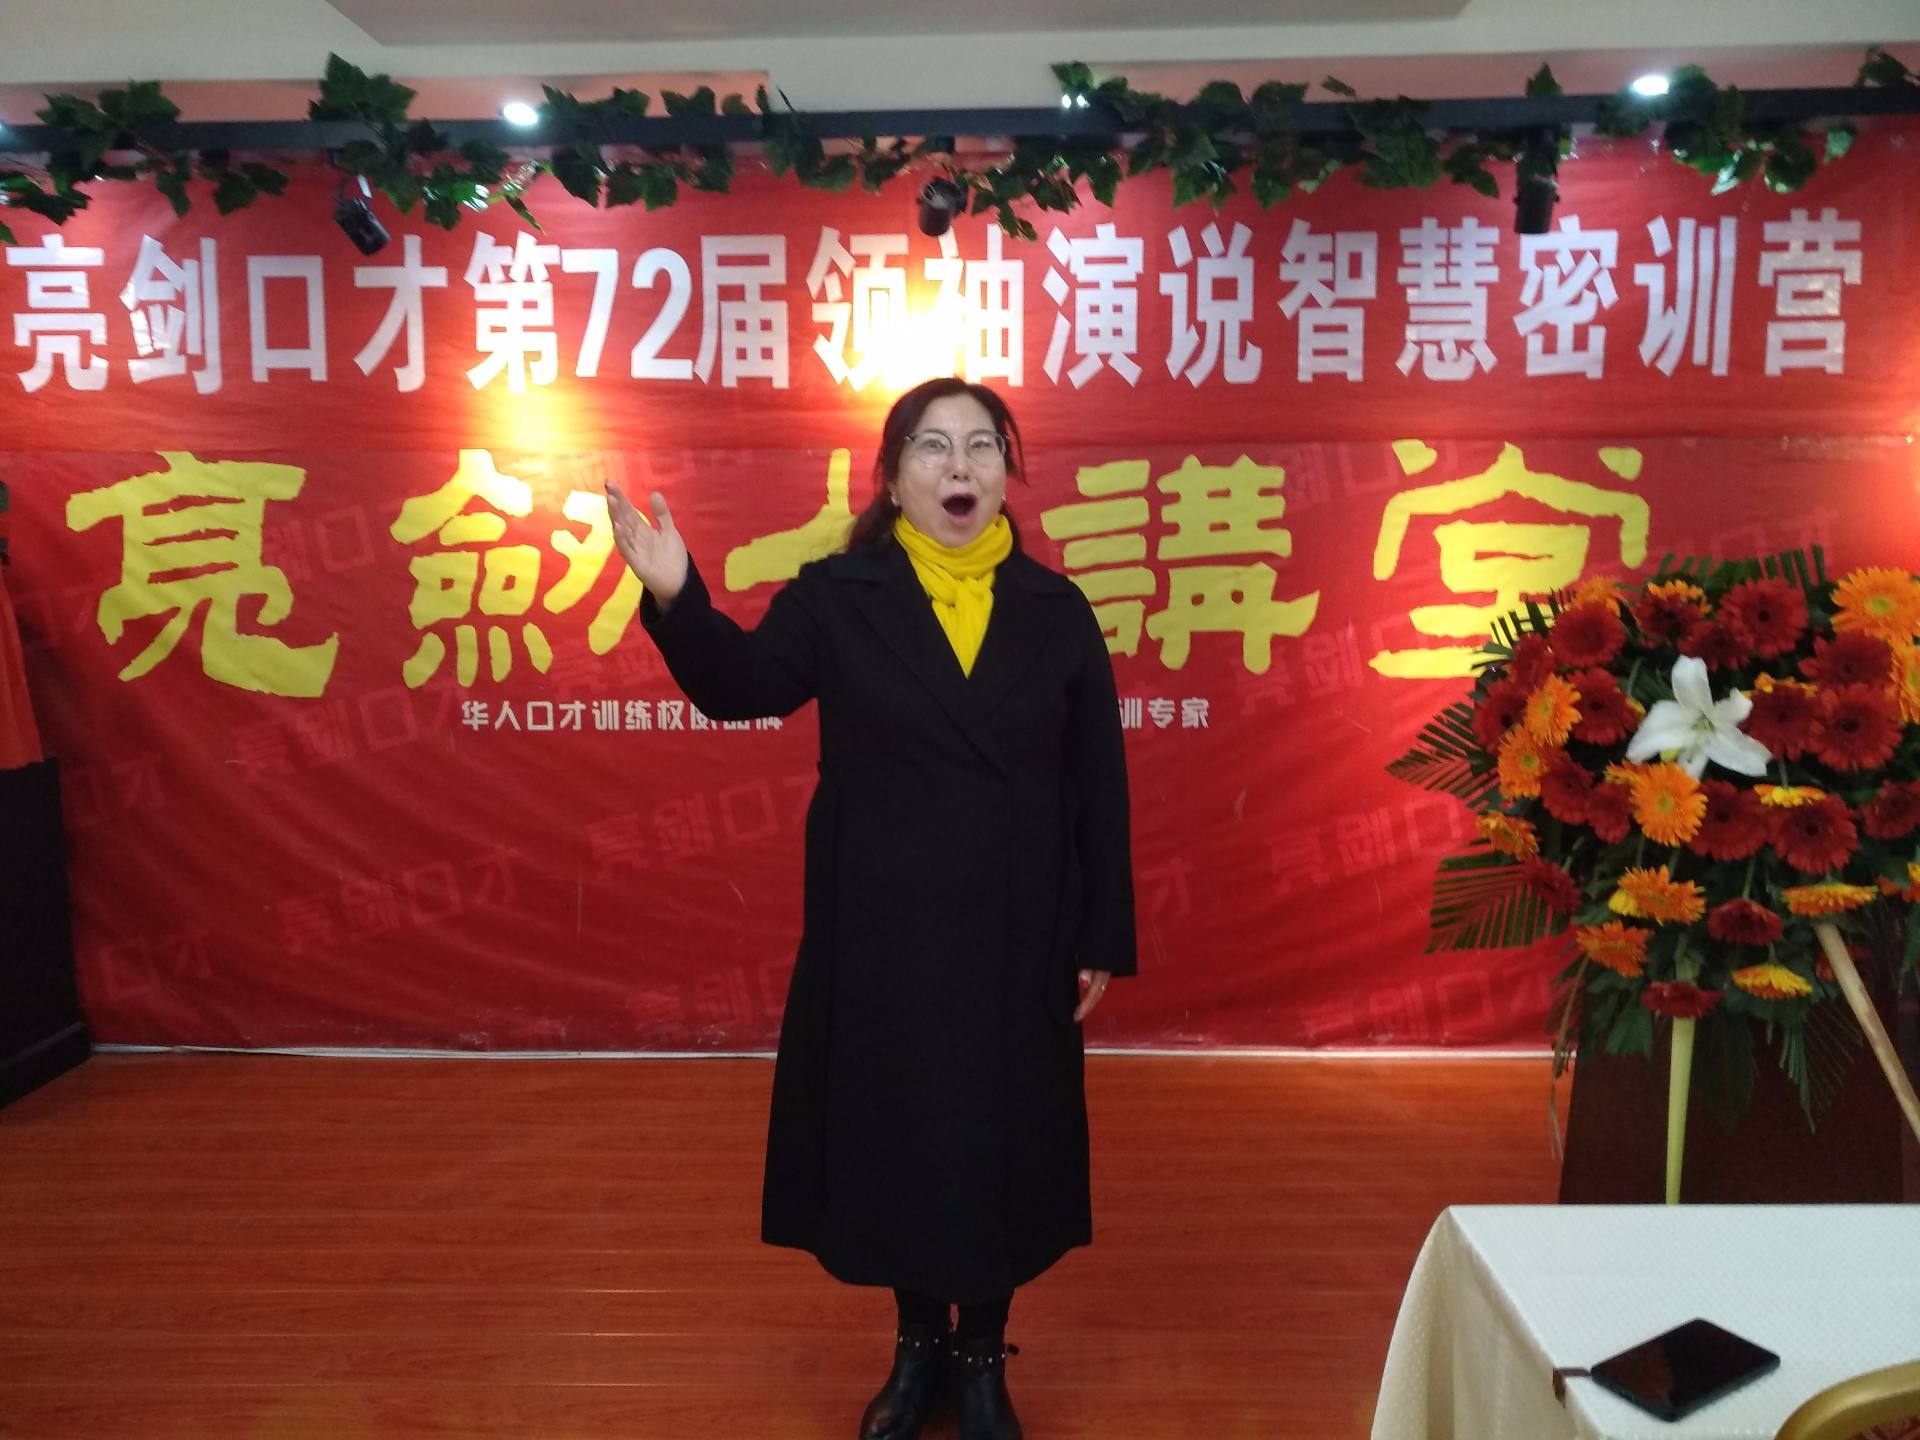 2019年12月5日刘海燕72届领袖课第三天作业